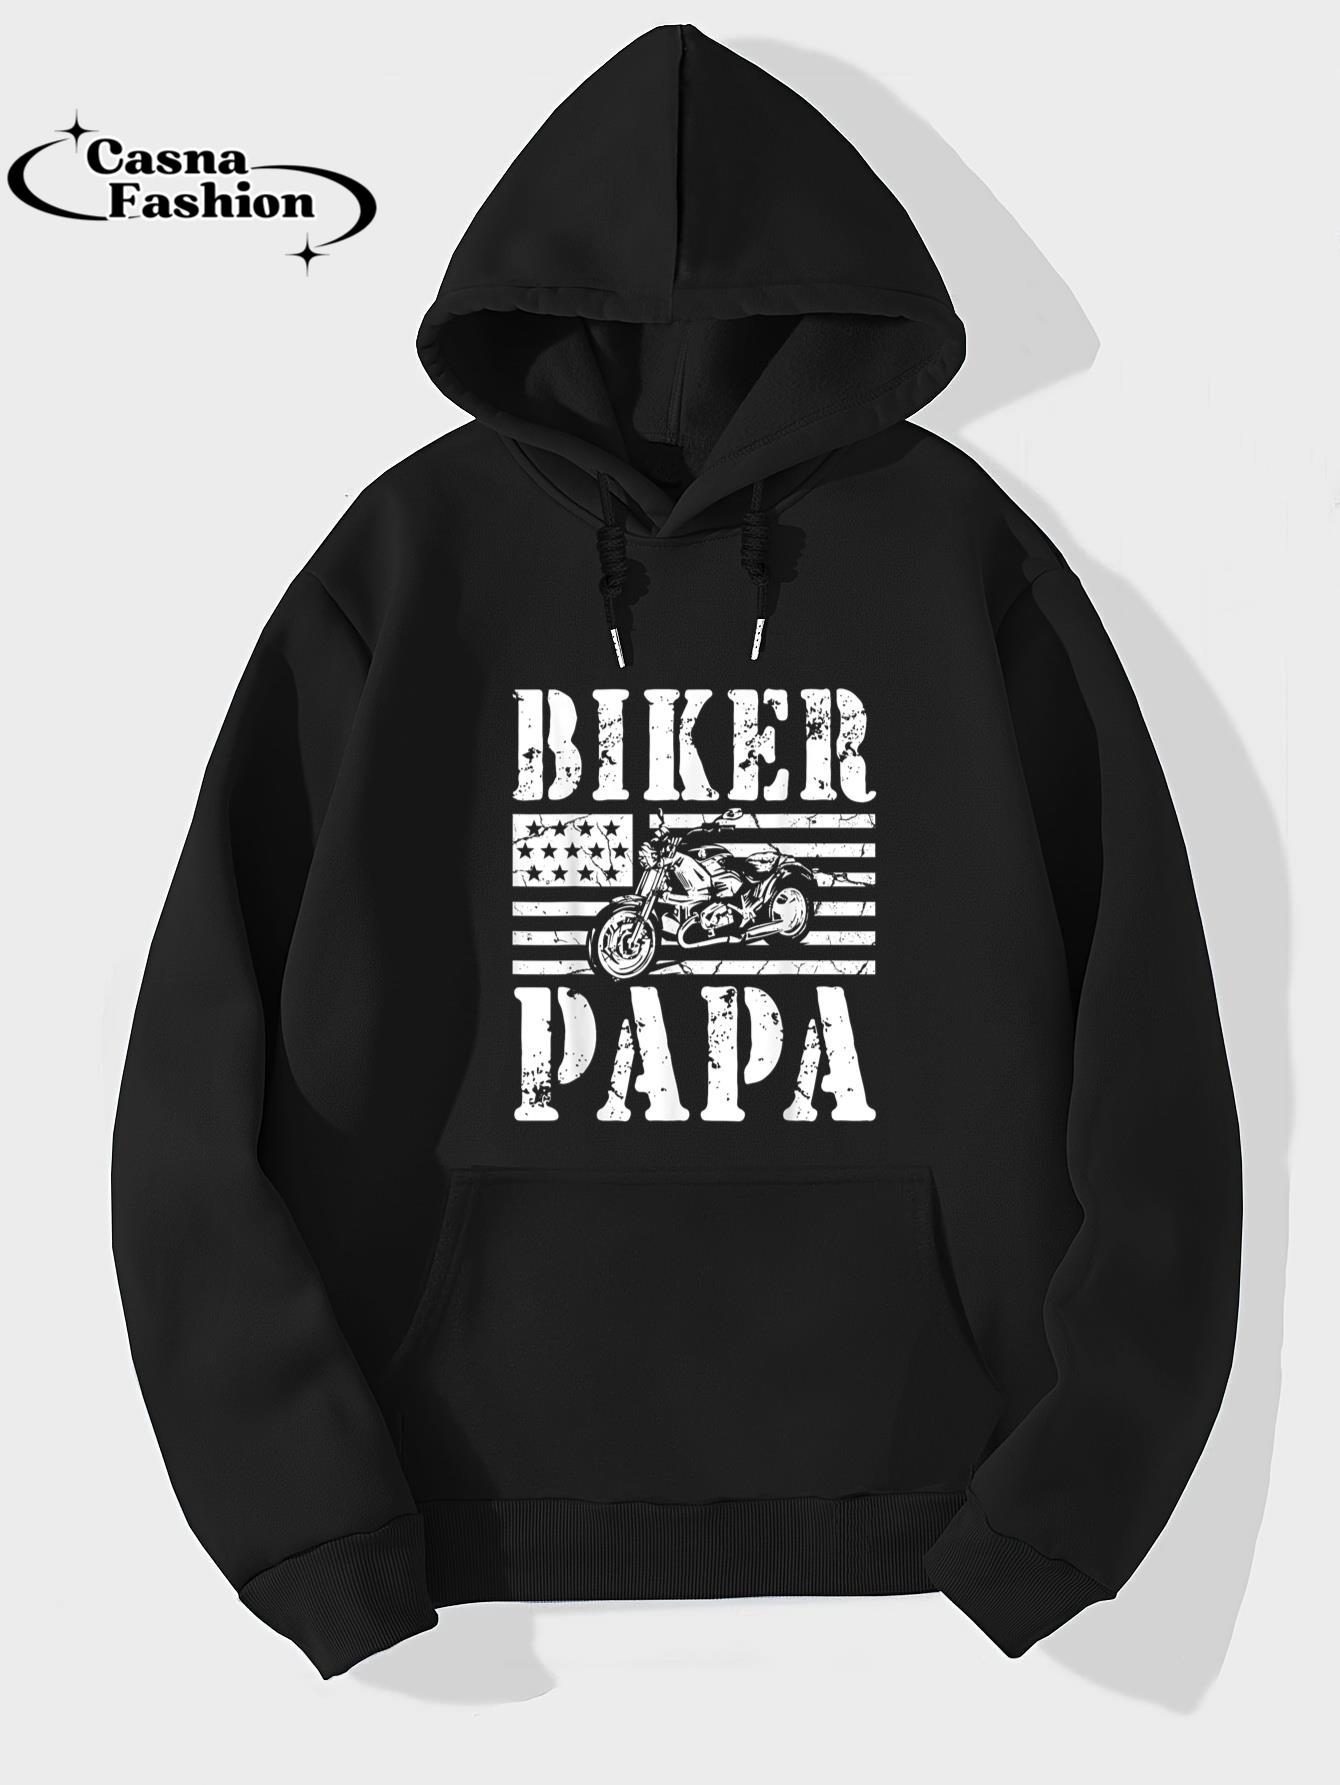 casnafashion_Hoodie_Vintage Papa Biker - Papa Motorcycle T-Shirt_hoodie_black hoodie